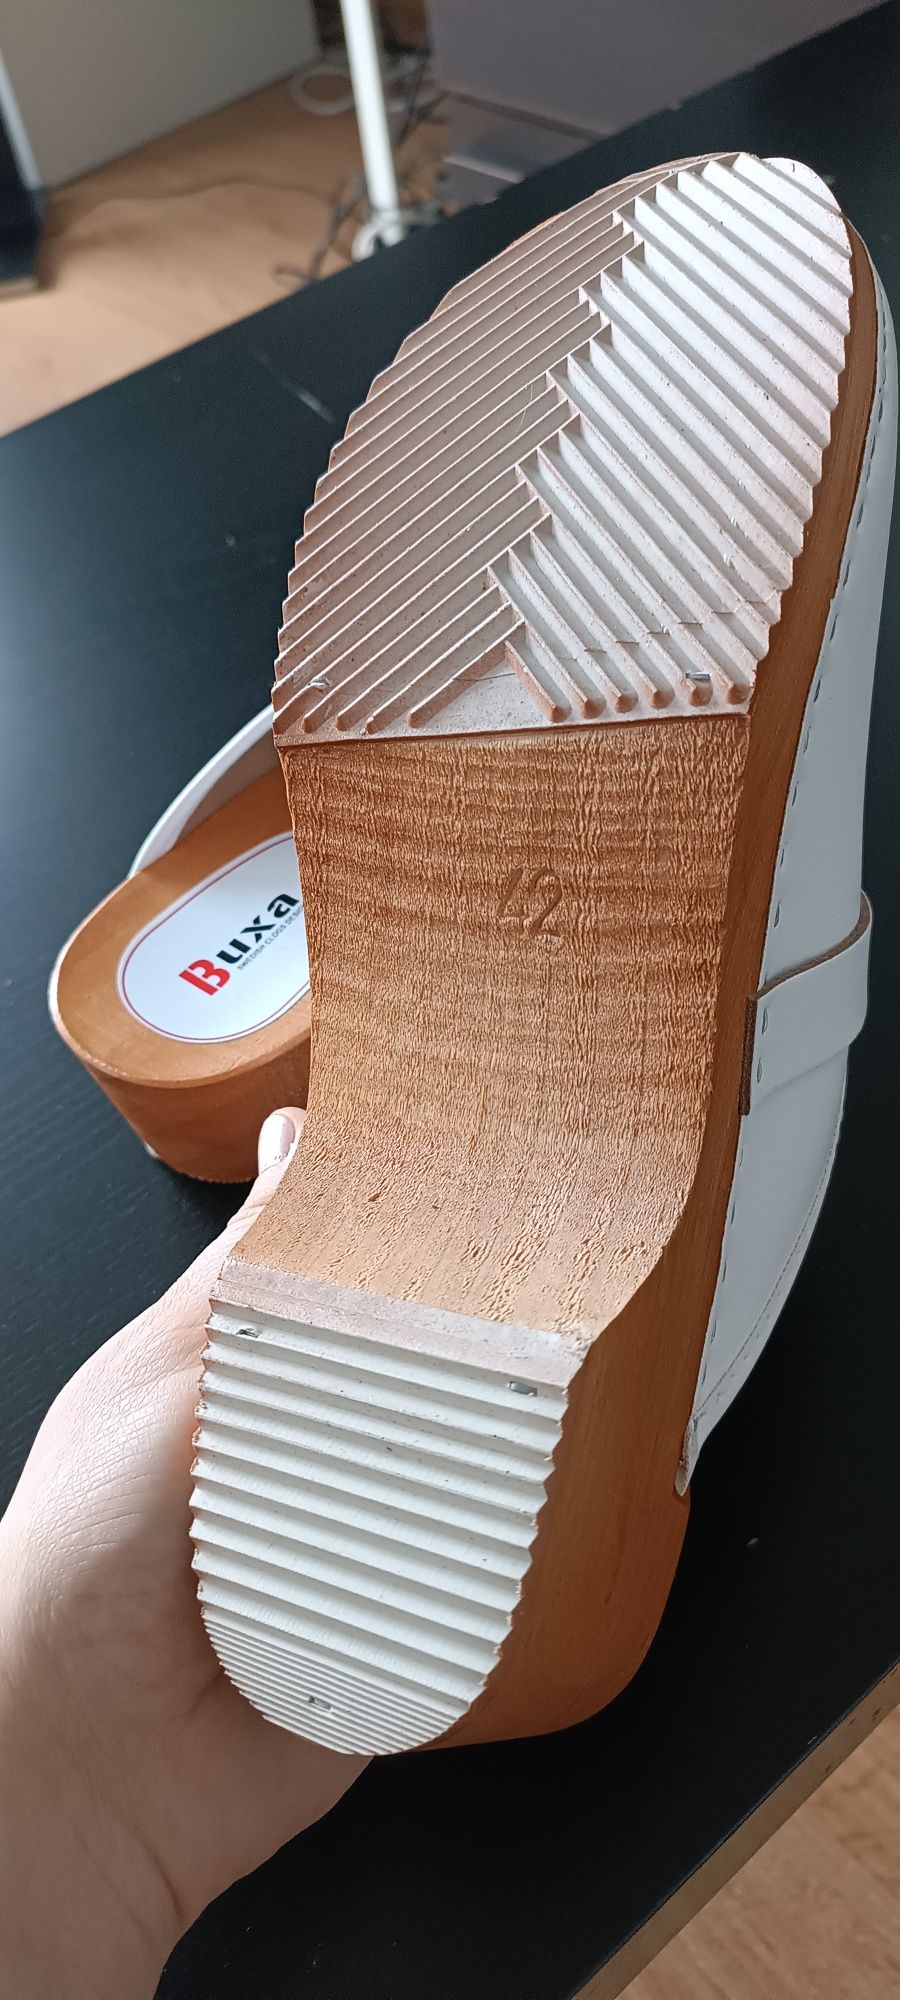 Buxa buty ortopedyczne medyczne drewniaki chodaki skóra